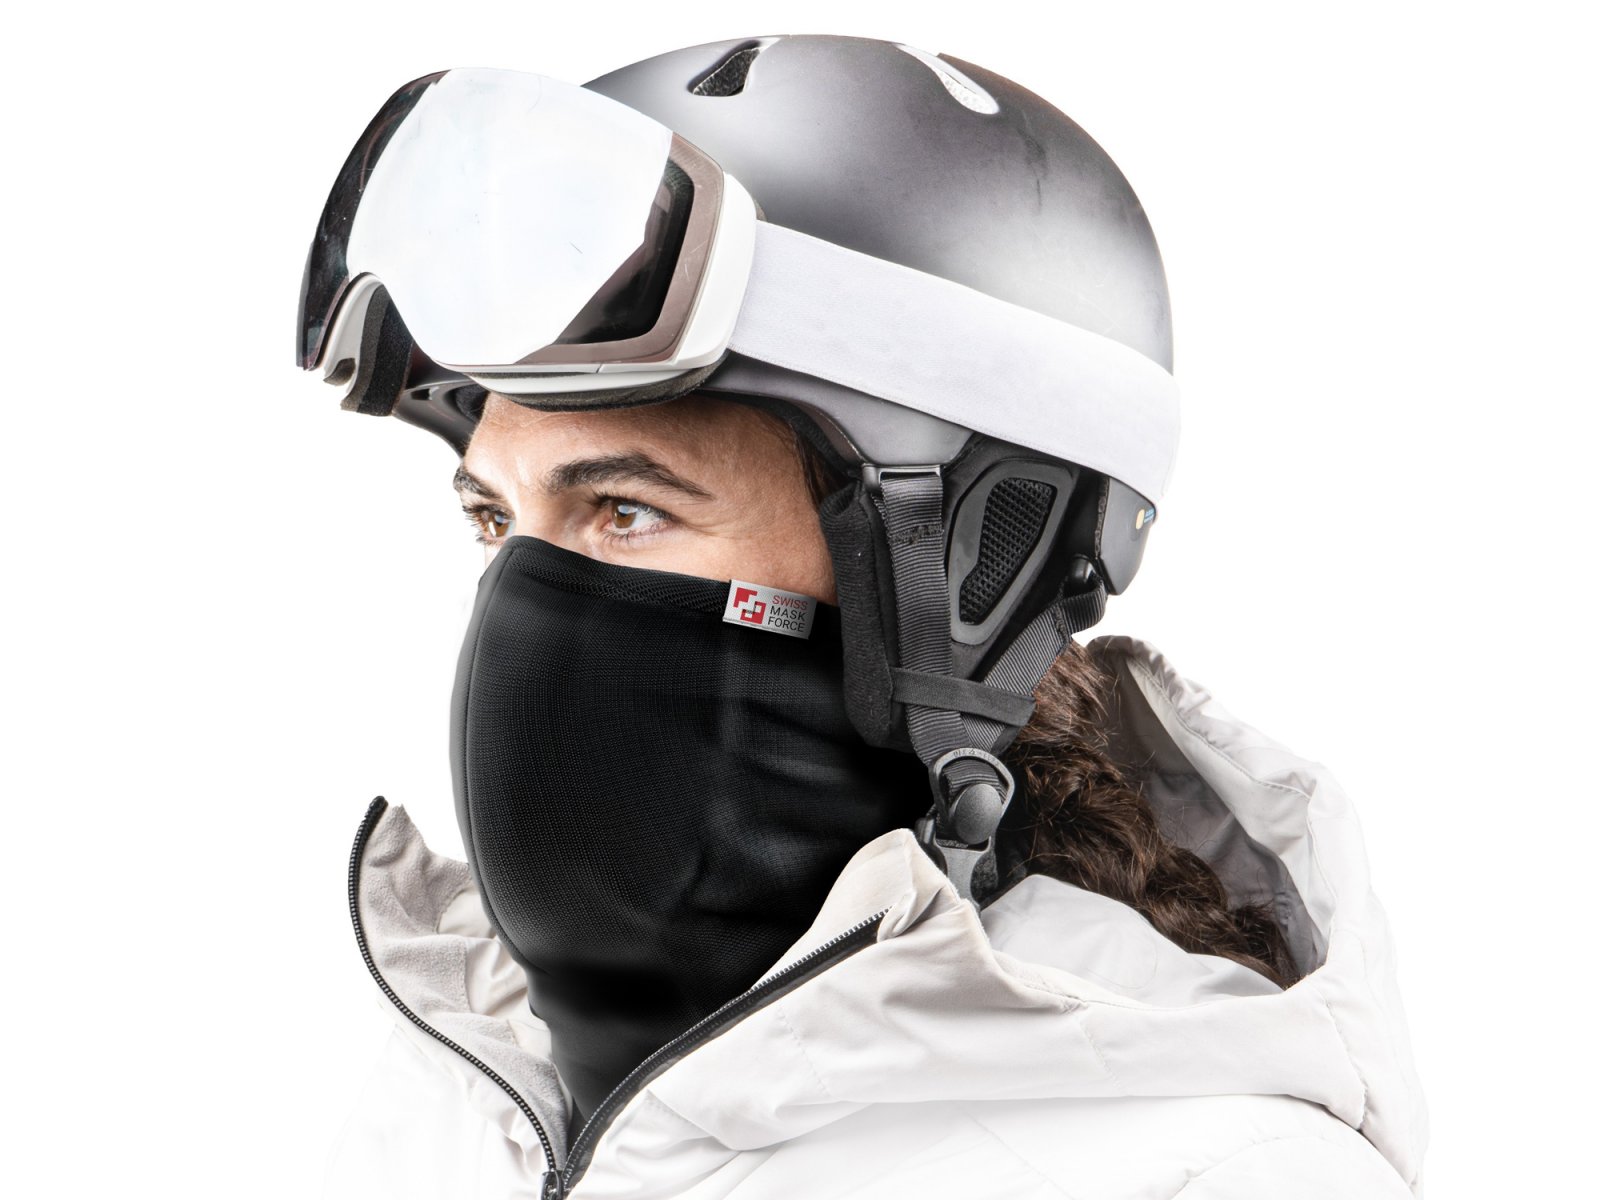 Swiss Mask Force Ski Mask livipro